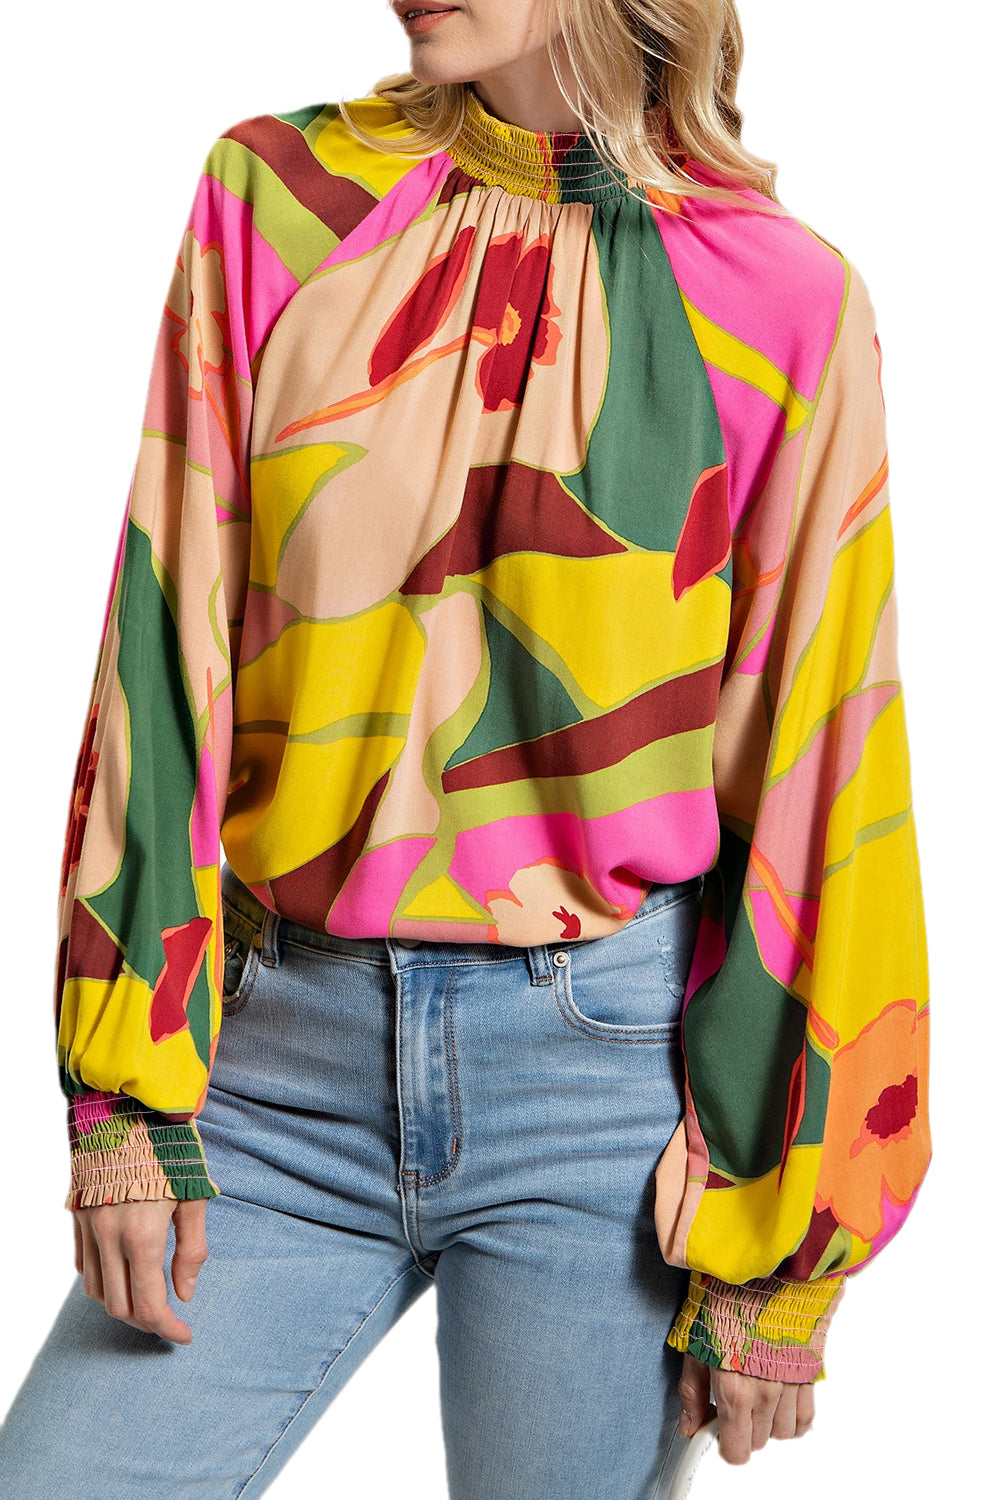 Večbarvna bluza s samostoječim ovratnikom in prevlečenim robom s cvetličnim vzorcem